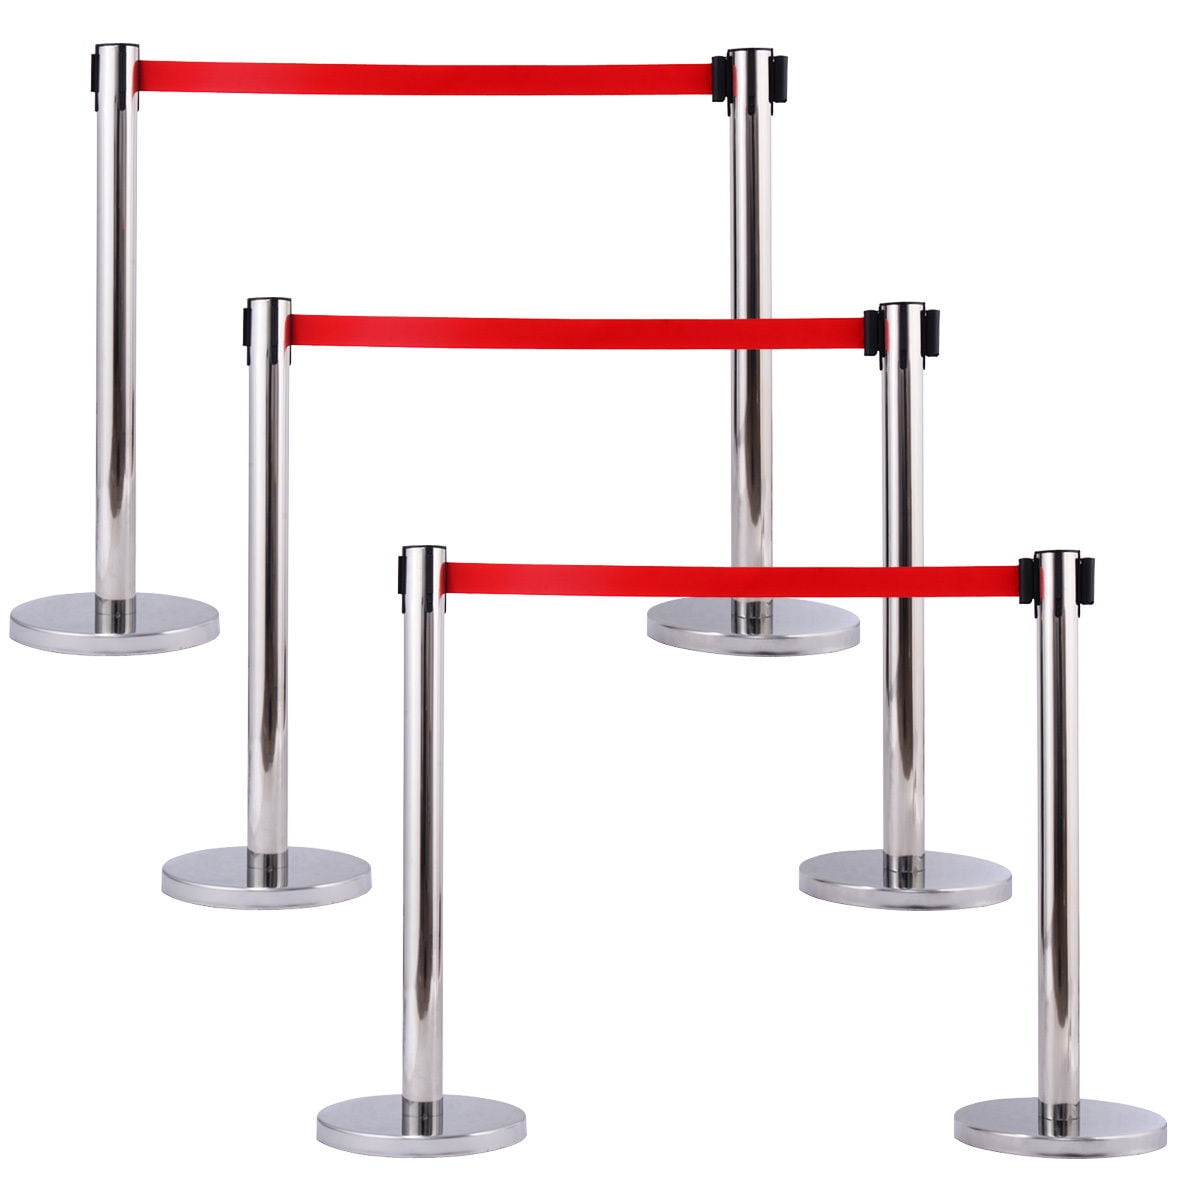 Queue Pole,Red Belt Crowd Control Barrier Black Retractable Belt Stanchion 